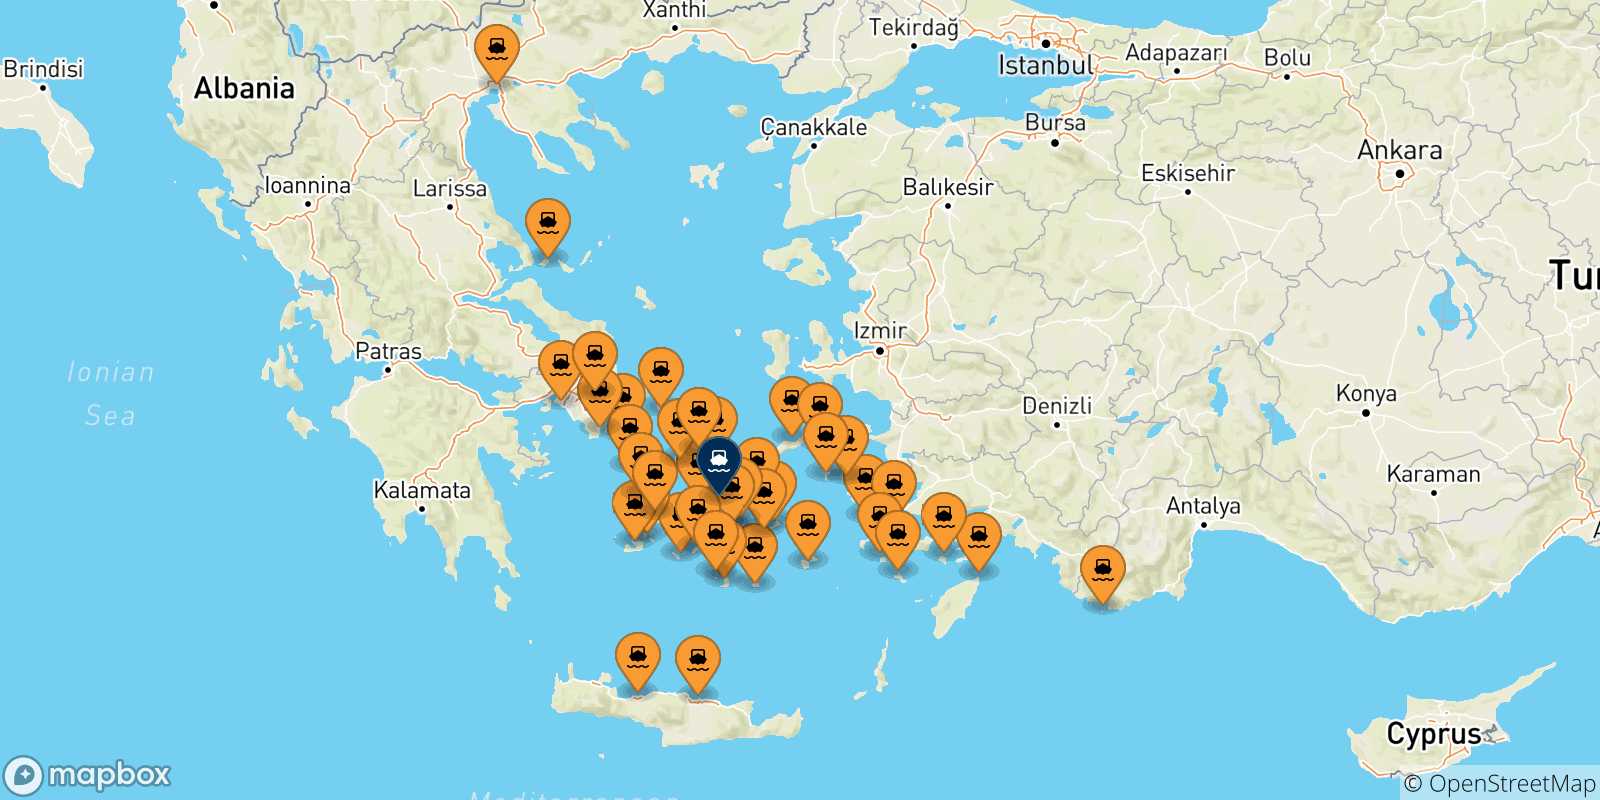 Mappa delle possibili rotte tra la Grecia e Naxos